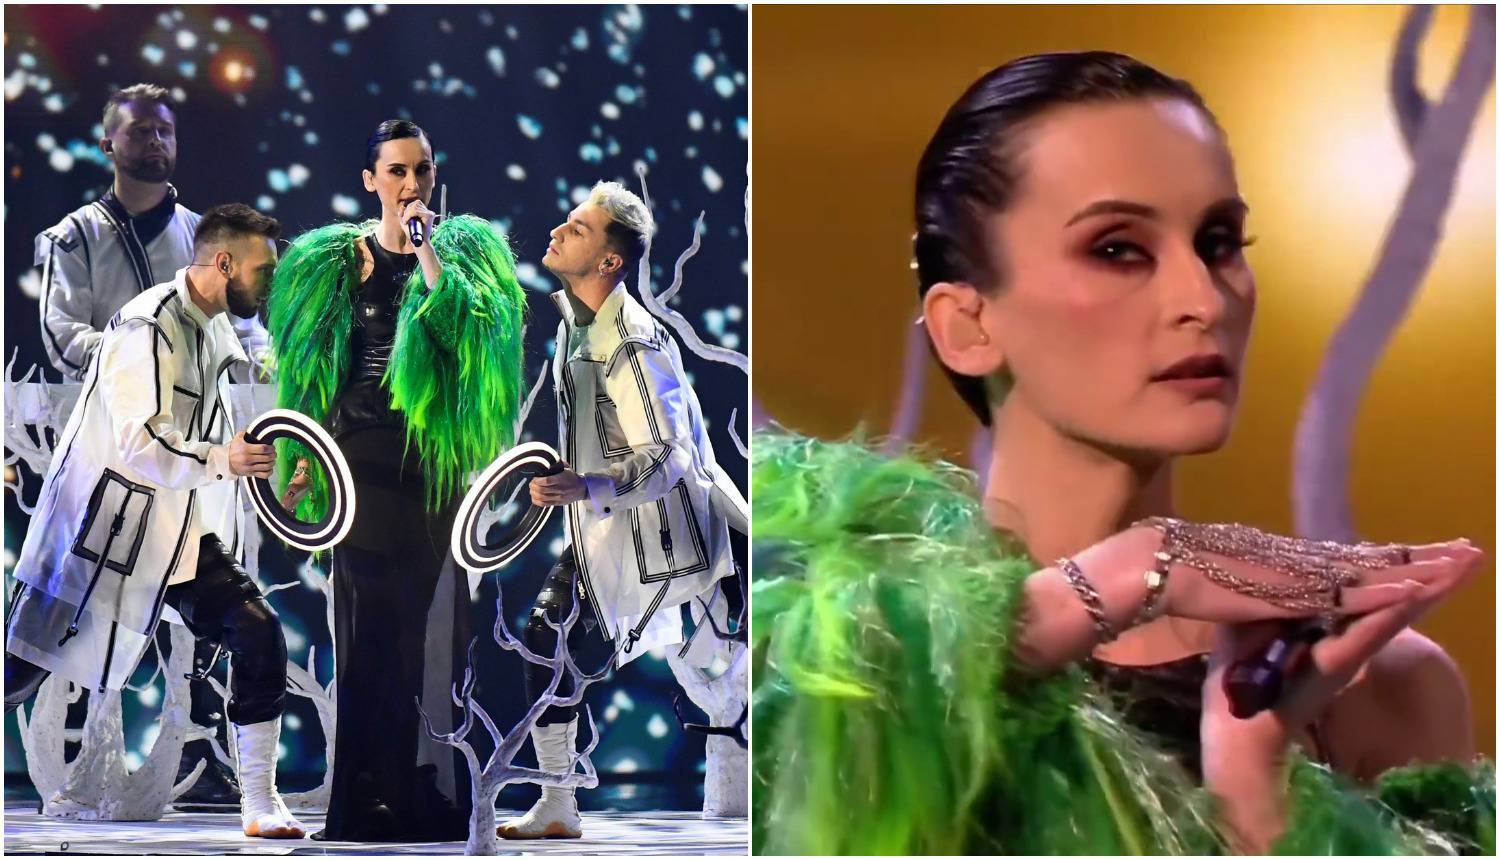 Prošlogodišnji predstavnici Ukrajine na Eurosongu: Ovo je najgora stvar koju smo doživjeli